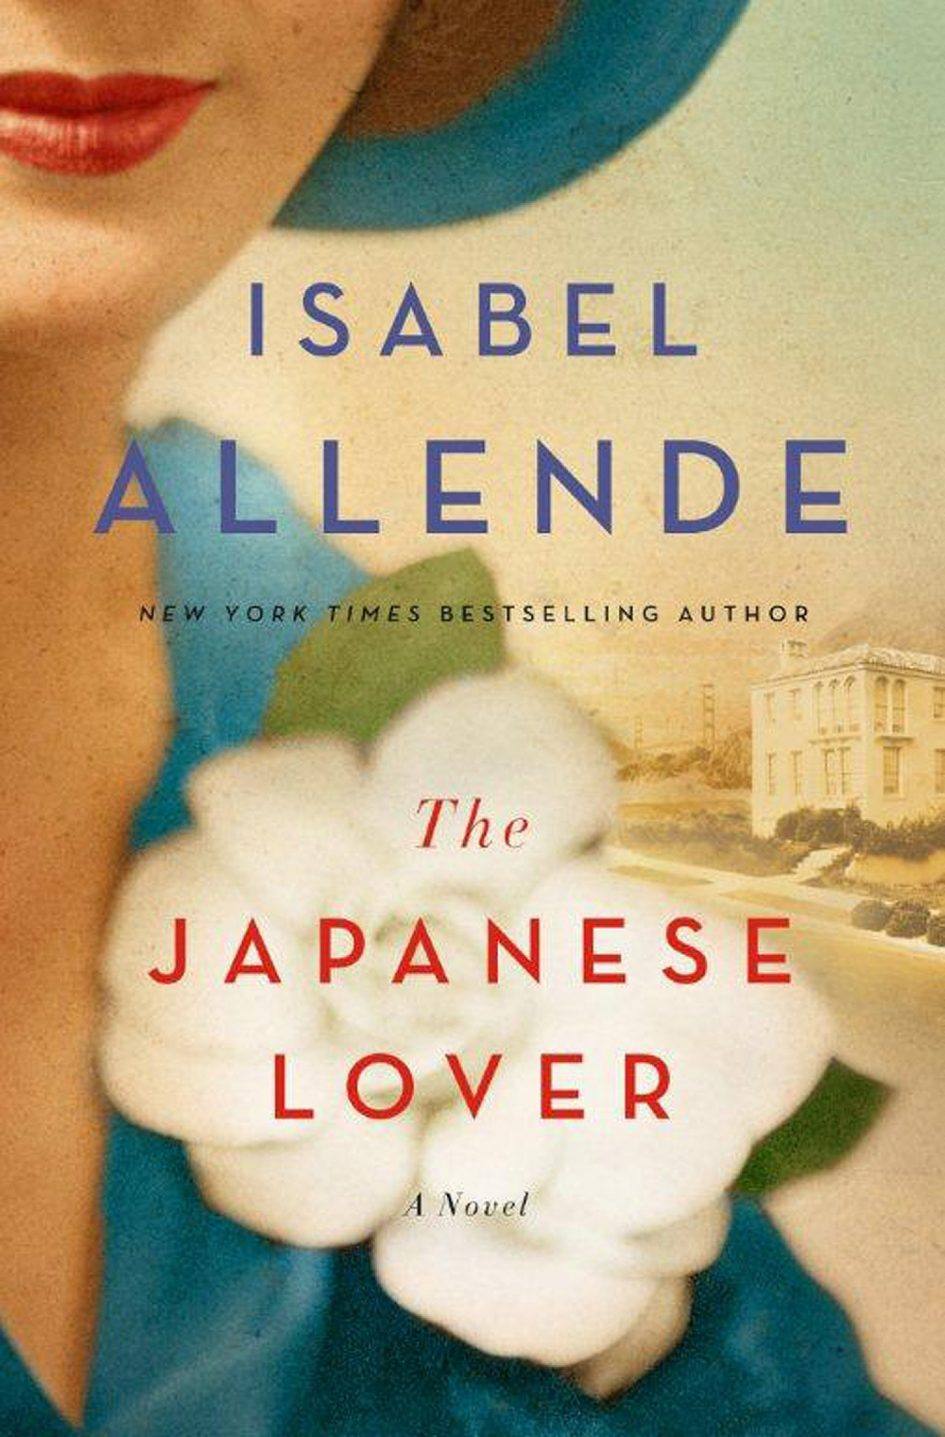 "Japanese Lover" by Isabel Allende